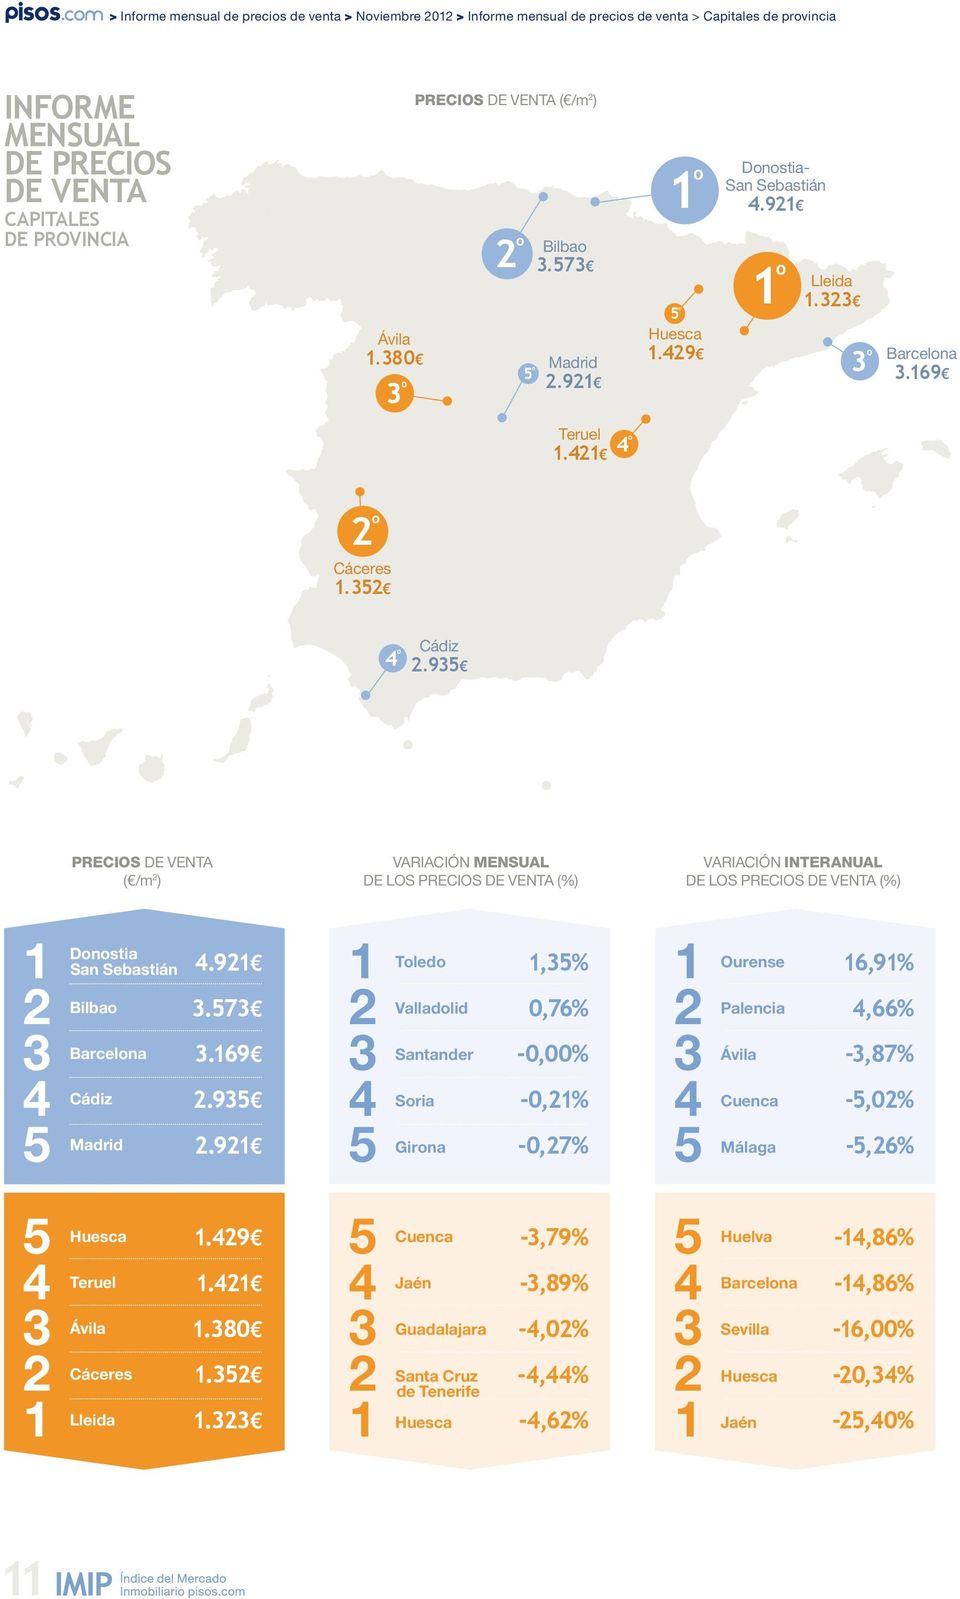 9 Precios de venta ( /m ) Variación mensual de los precios de venta (%) Variación interanual de los precios de venta (%) Donostia San Sebastián Bilbao Barcelona Cádiz.9.7.69.9.9 Toledo Valladolid Santander Soria Girona,% 0,76% -0,00% -0,% -0,7% Ourense Palencia Ávila Cuenca Málaga 6,9%,66% -,87% -,0% -,6% Huesca Teruel Ávila Cáceres Lleida.